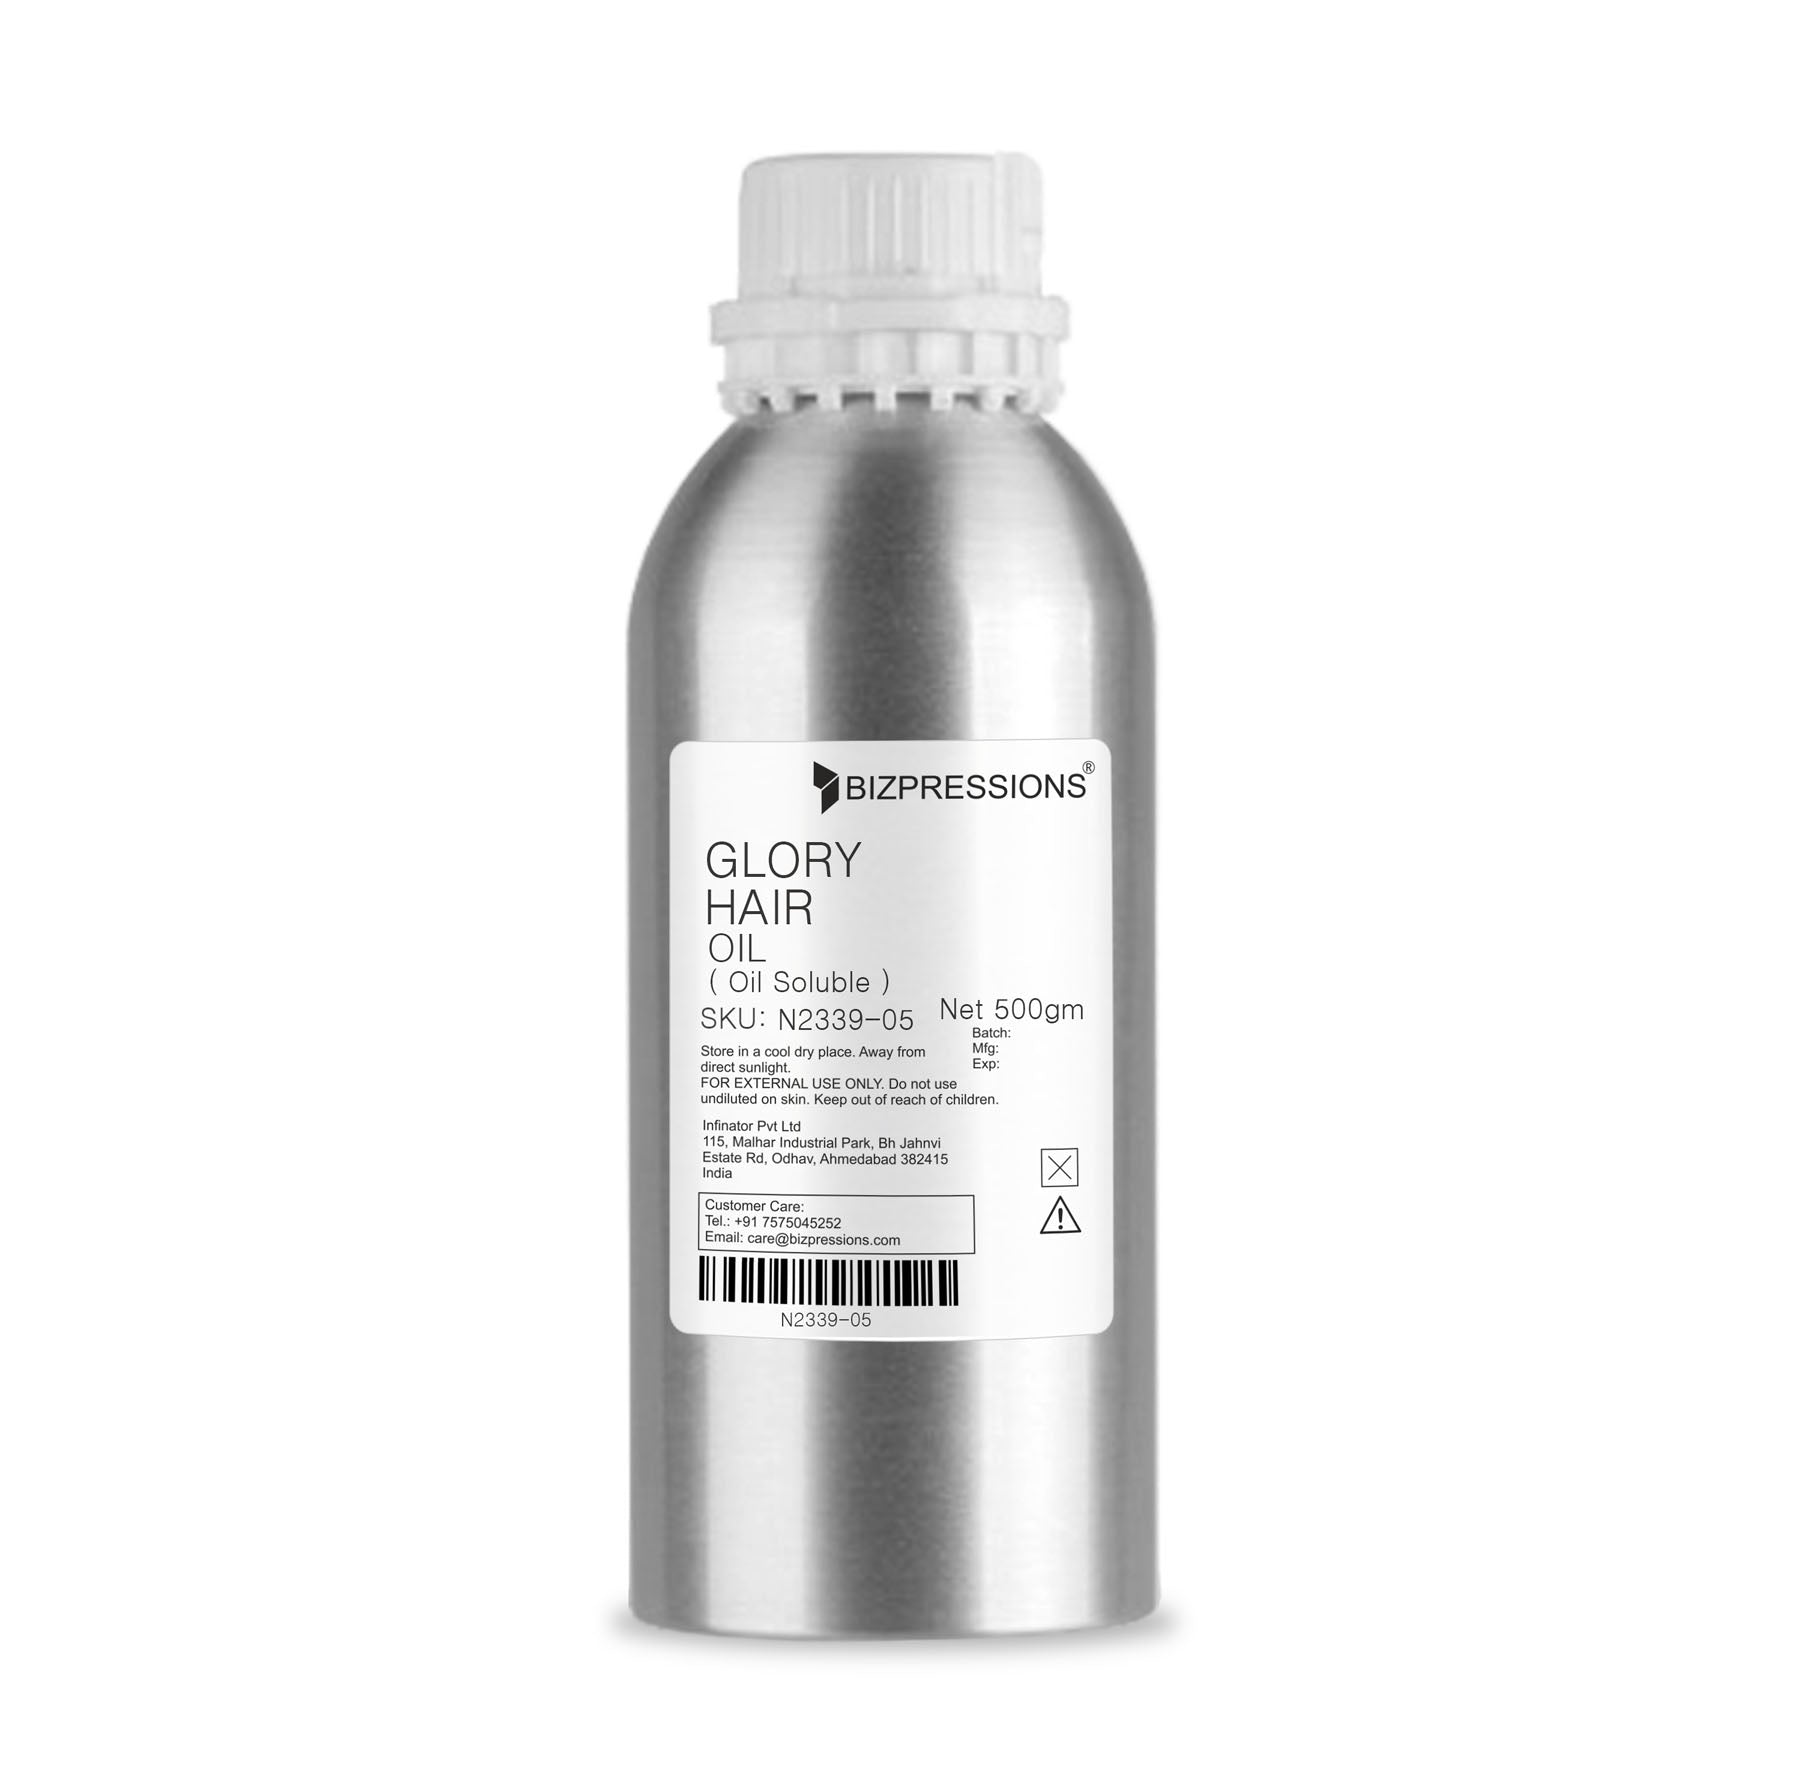 GLORY HAIR OIL - Fragrance ( Oil Soluble ) - 500 gm